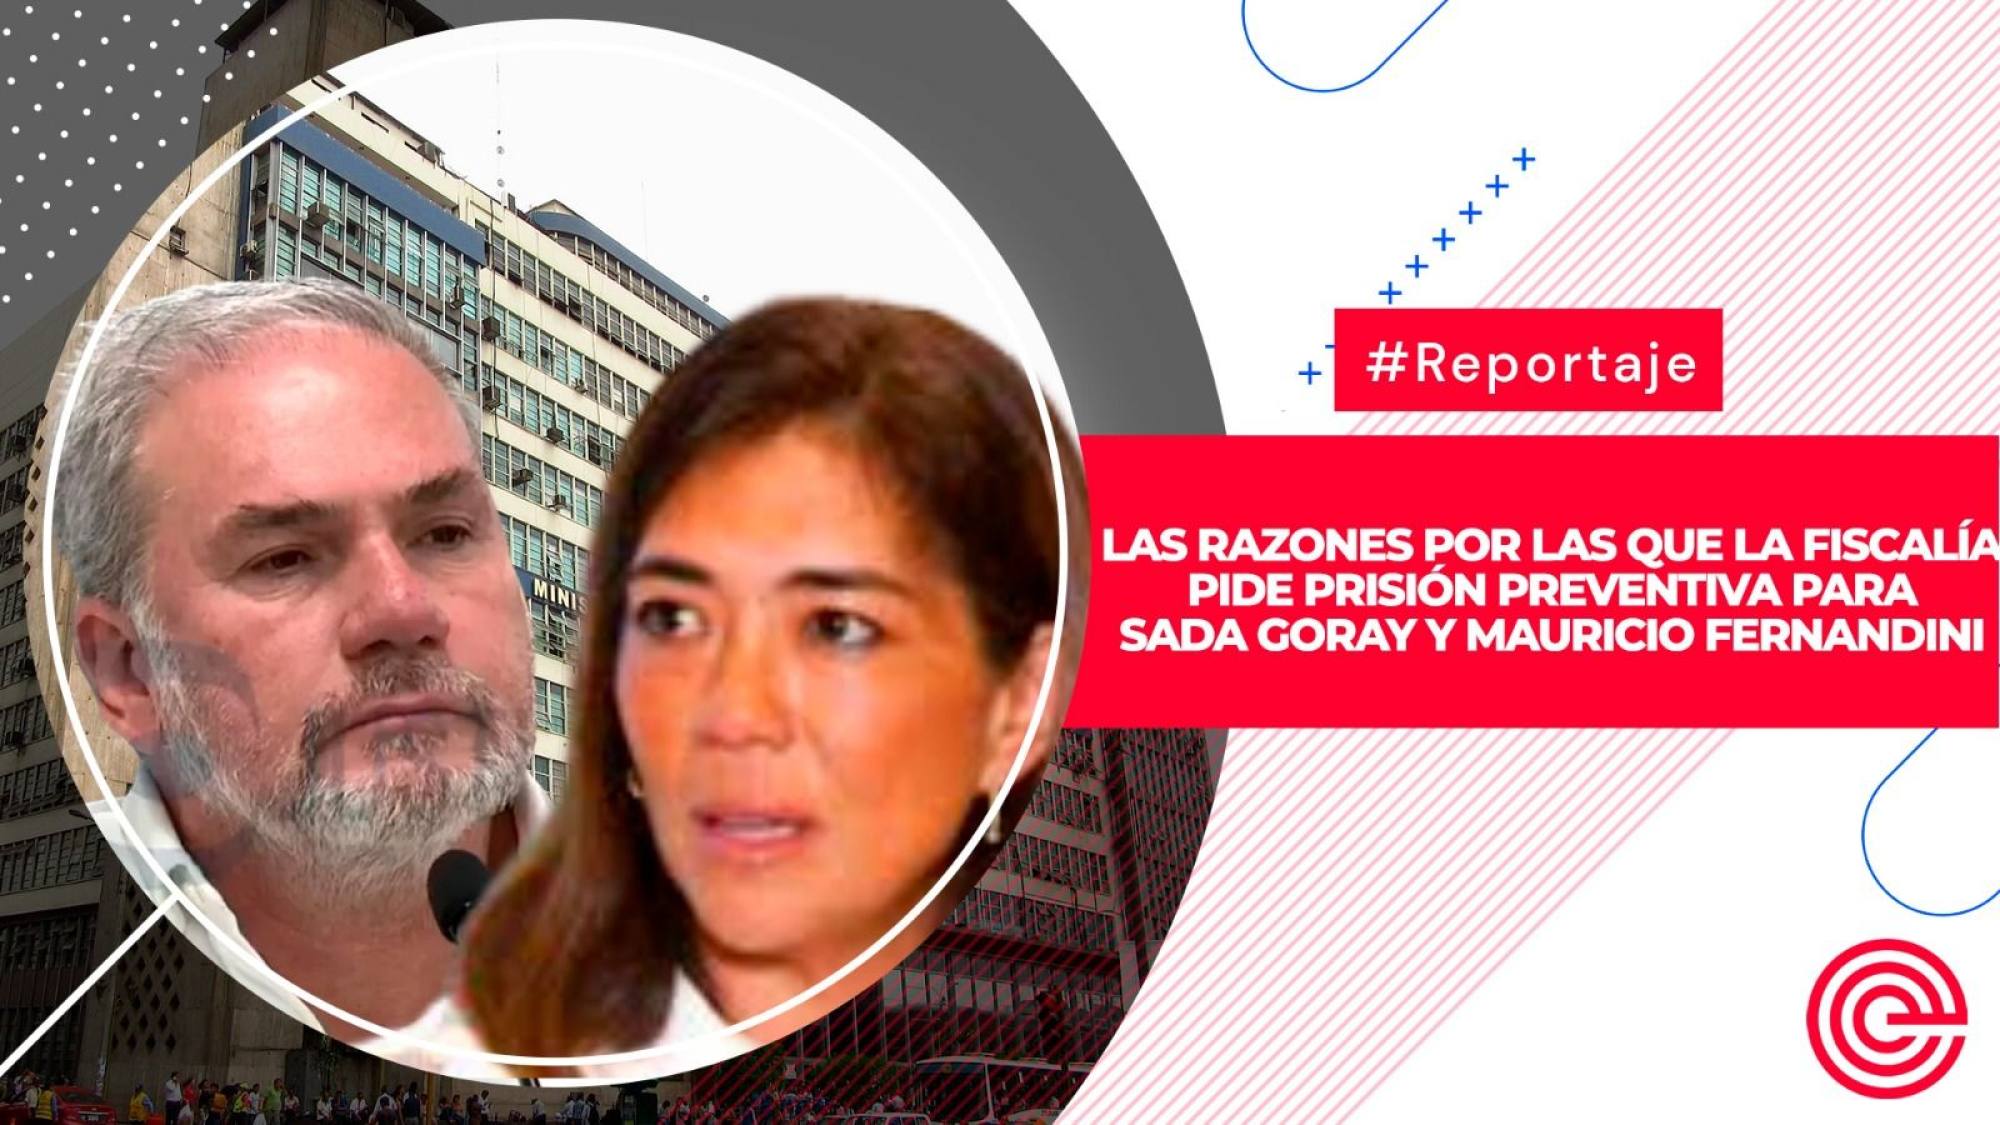 Las razones por las que la Fiscalía pide prisión preventiva para Sada Goray y Mauricio Fernandini, Epicentro TV